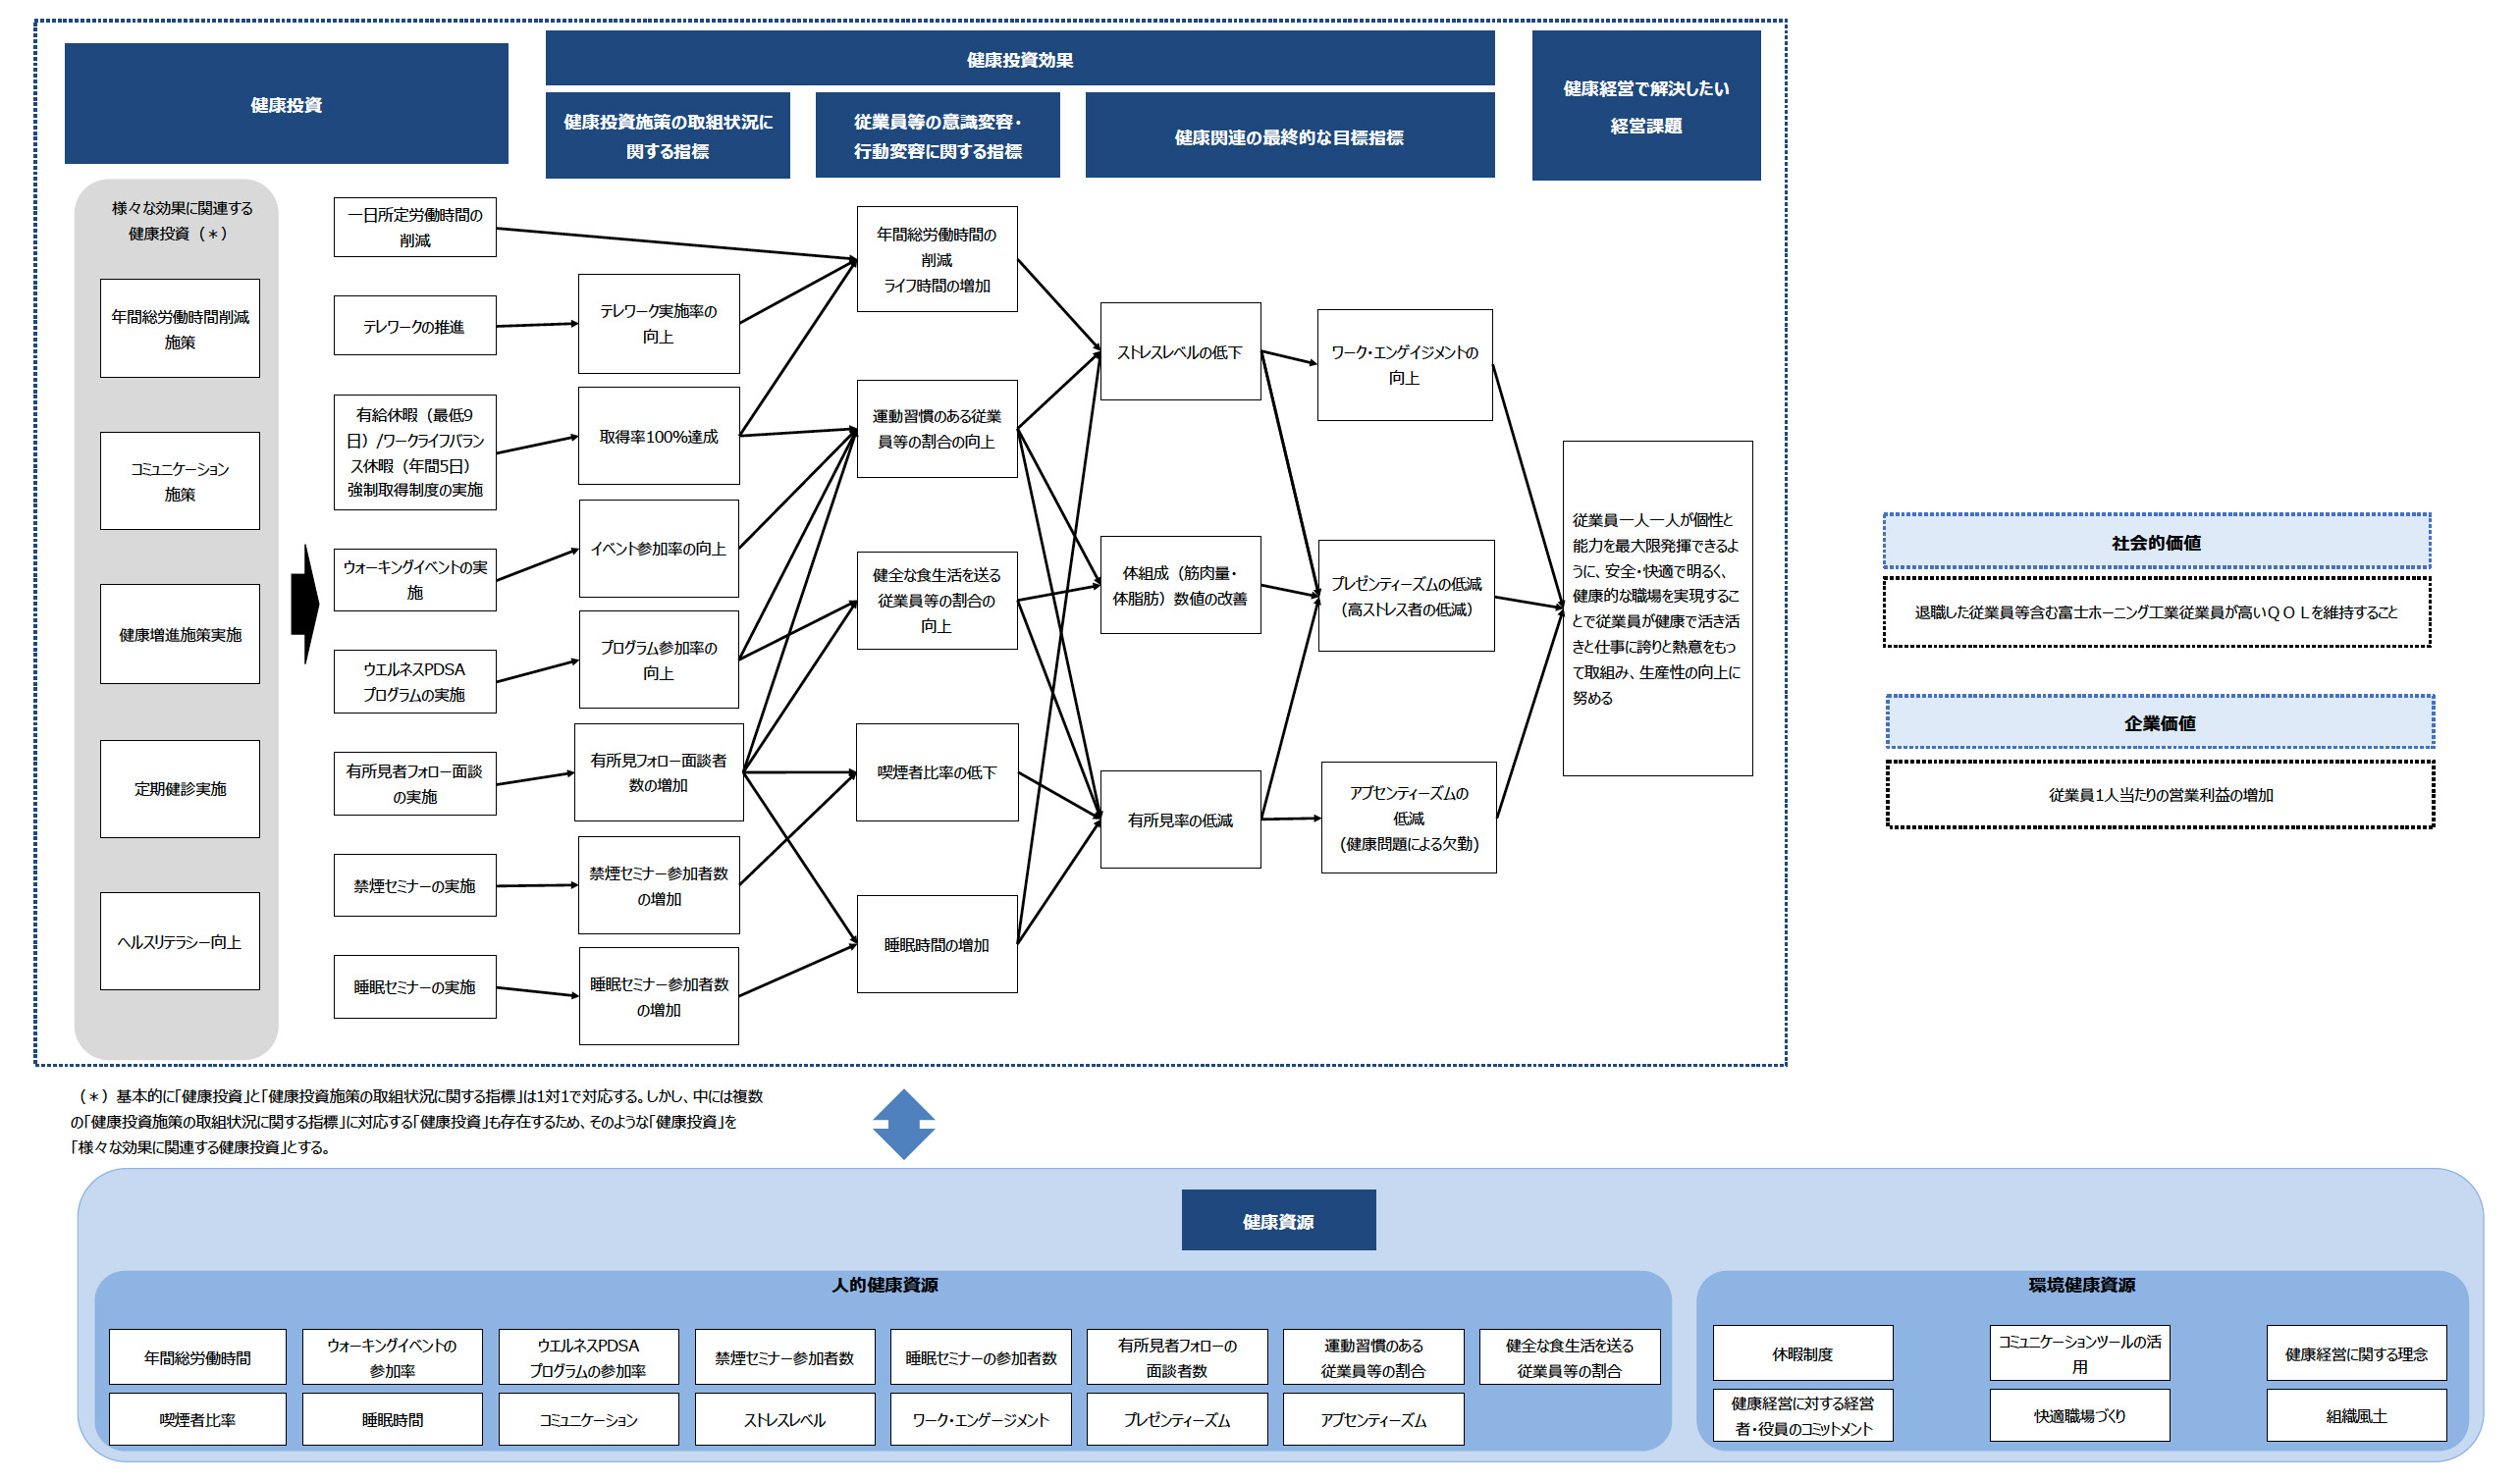 富士ホーニング工業株式会社 健康経営戦略マップ